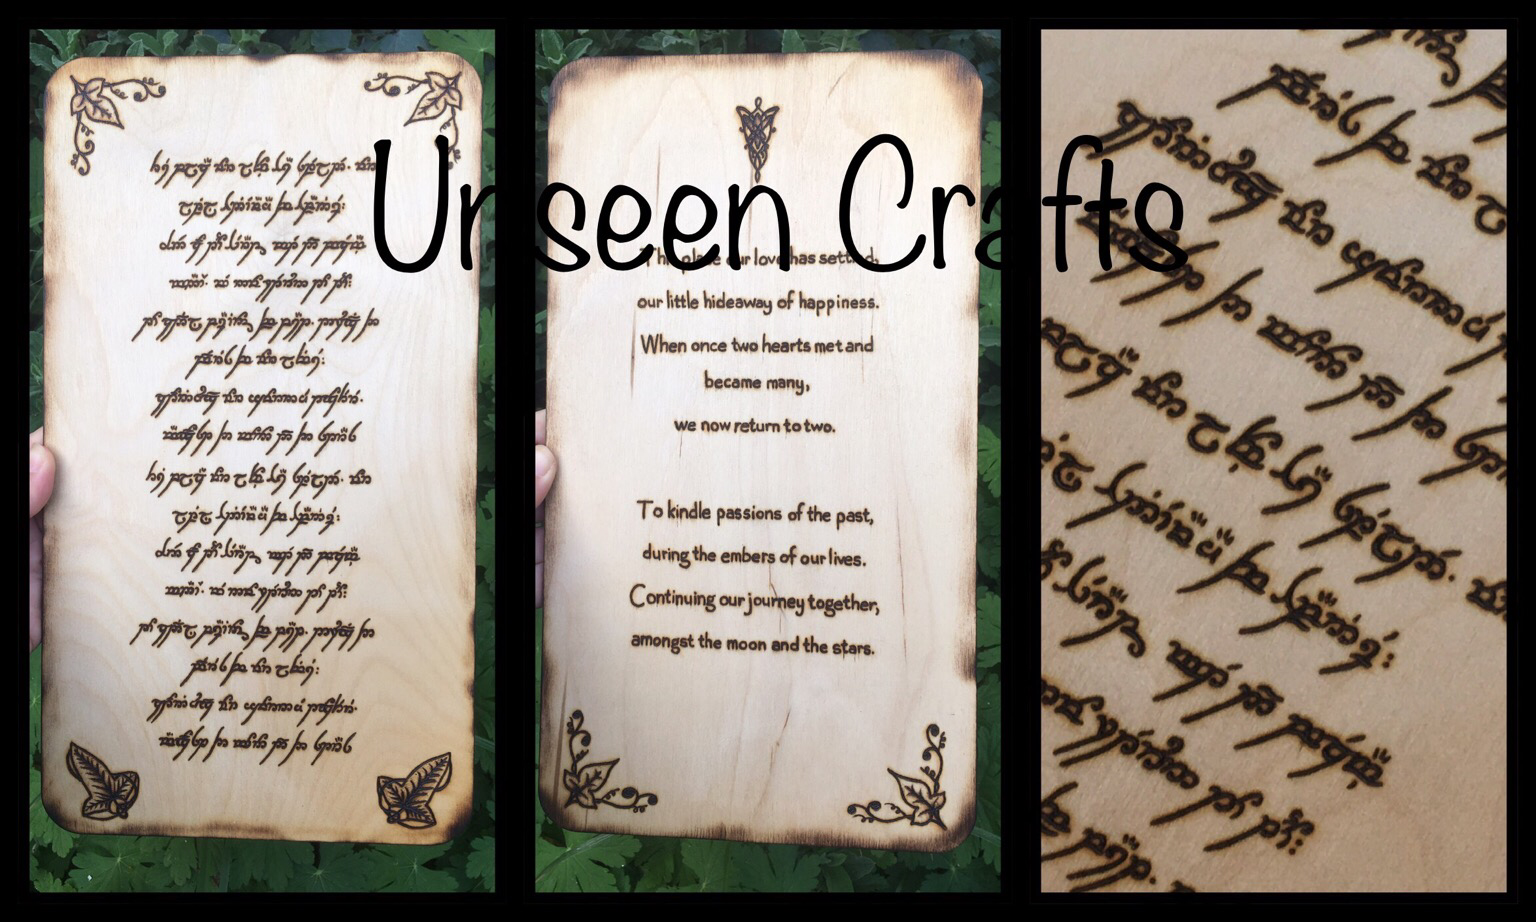 Unseen Crafts (@UnseenCrafts@mastodon.world) - Mastodon